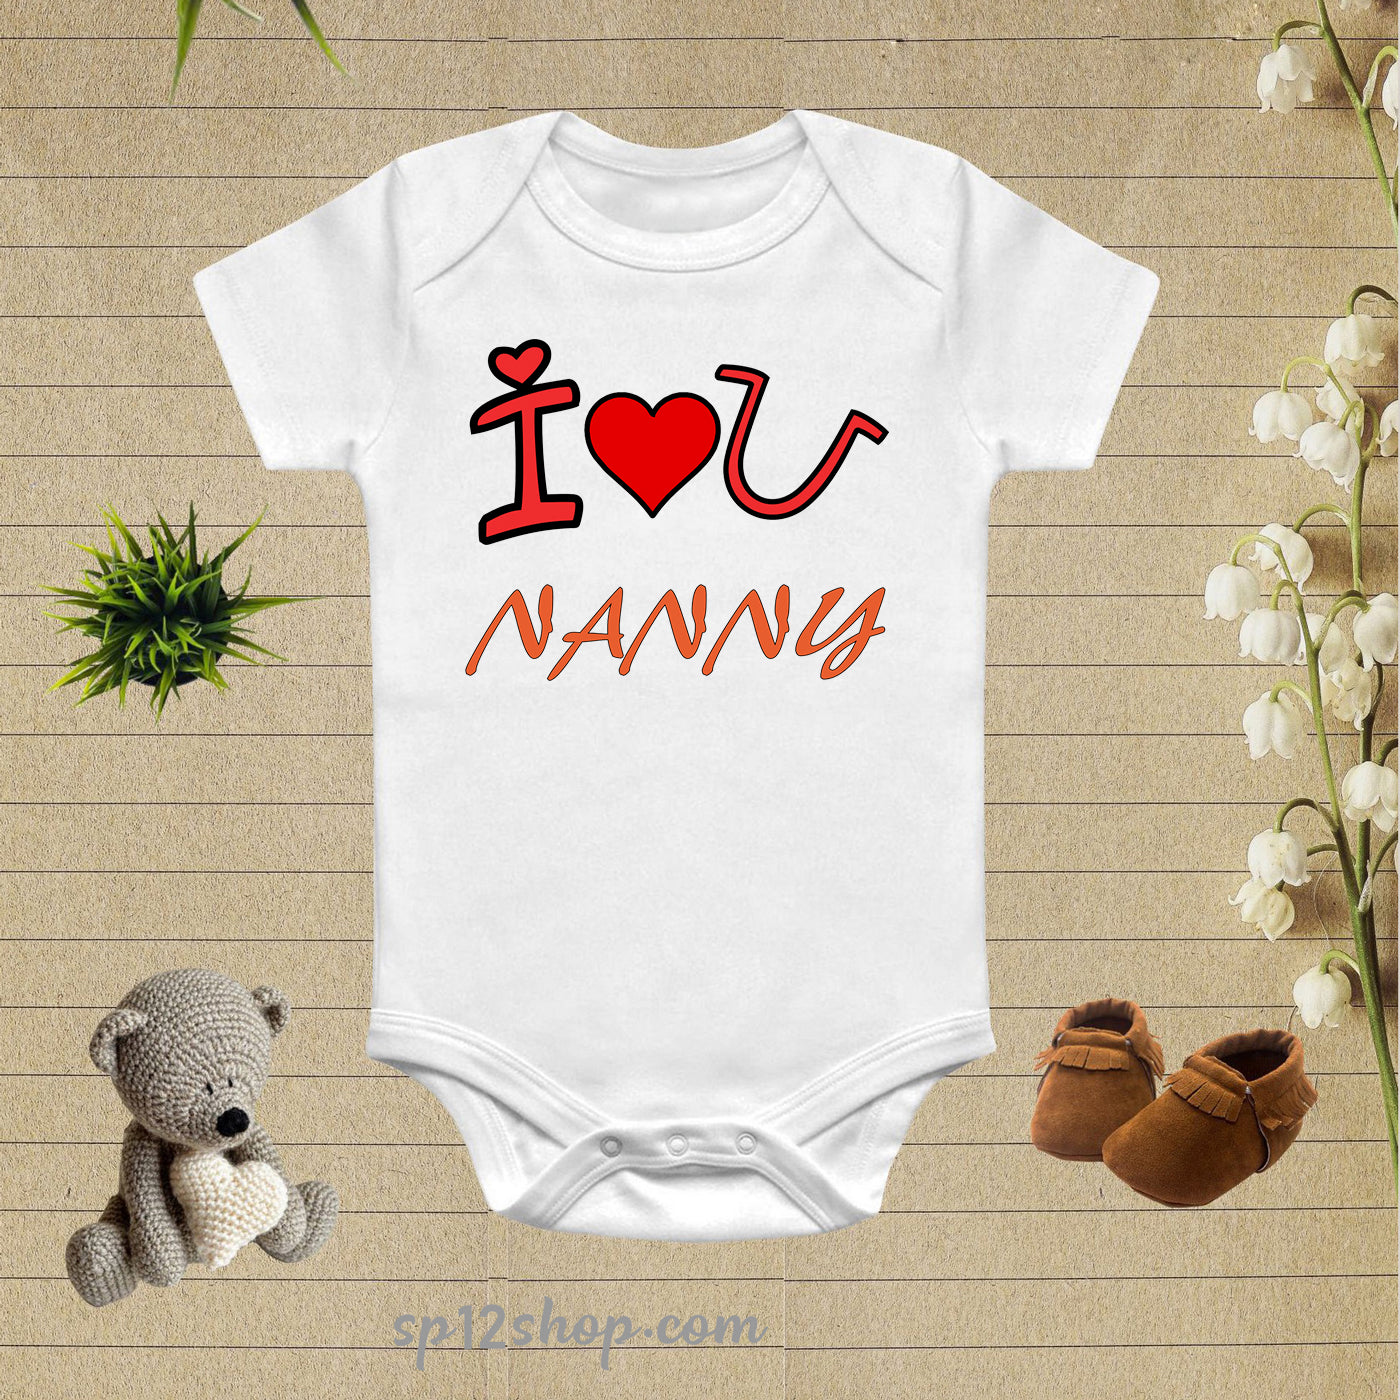 I Love U Nanny Baby Bodysuit Onesie